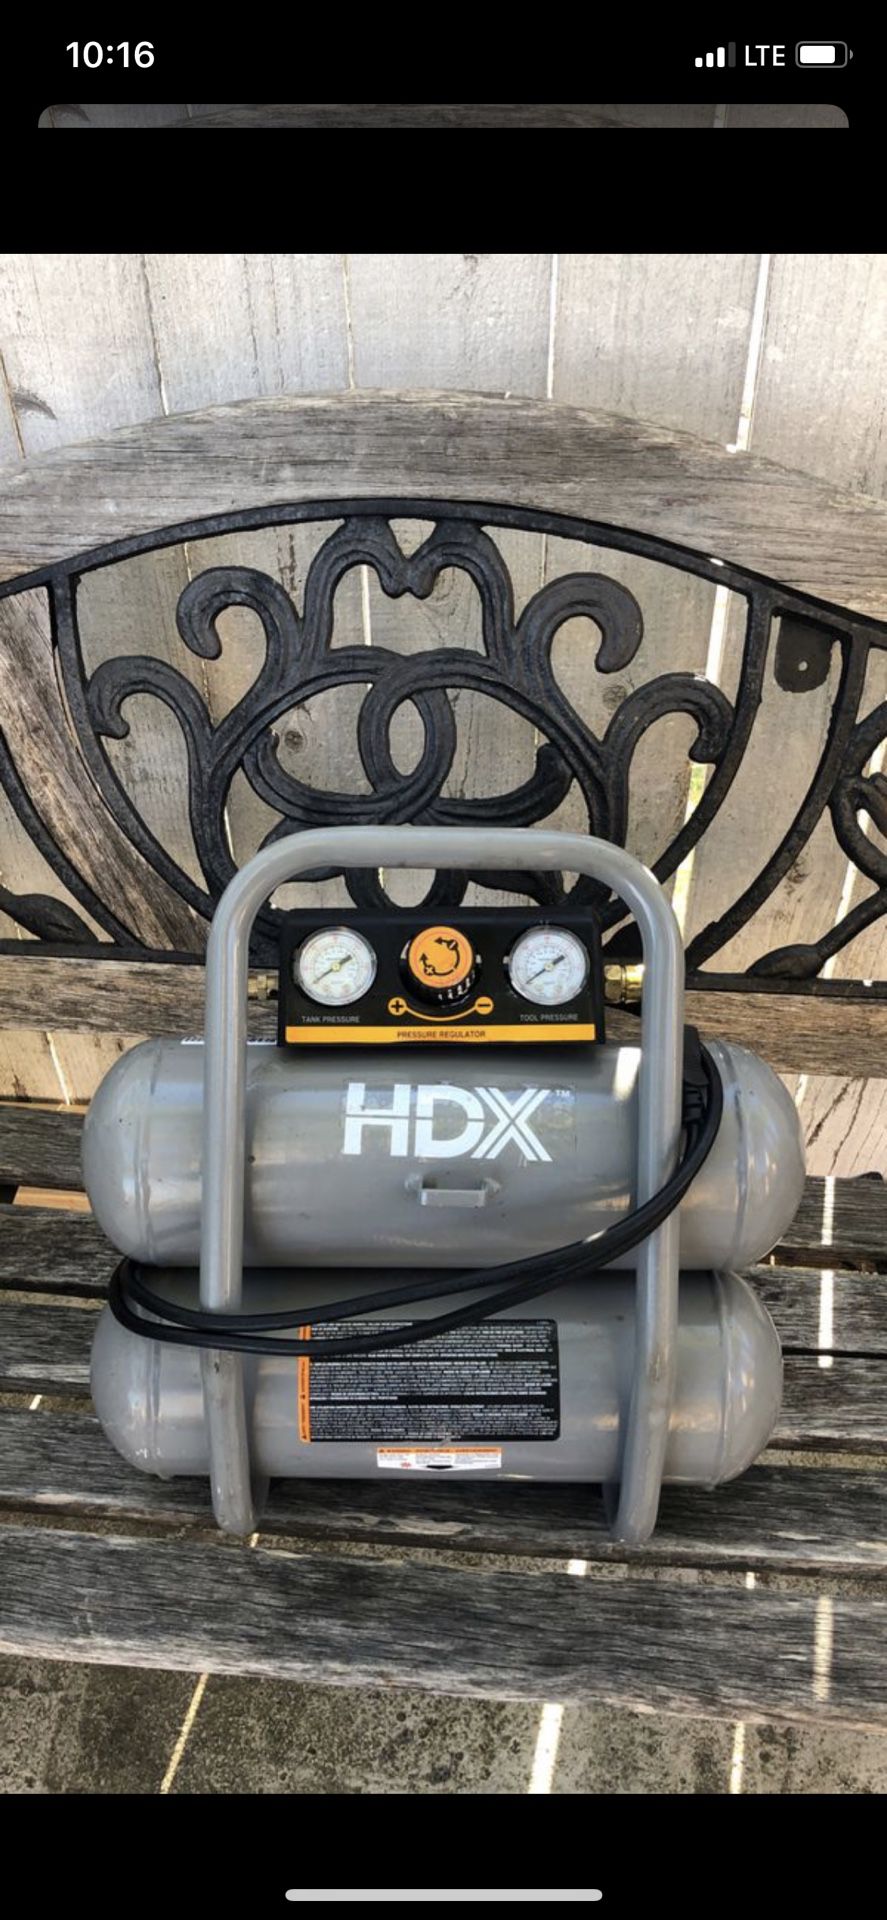 HDX compressor